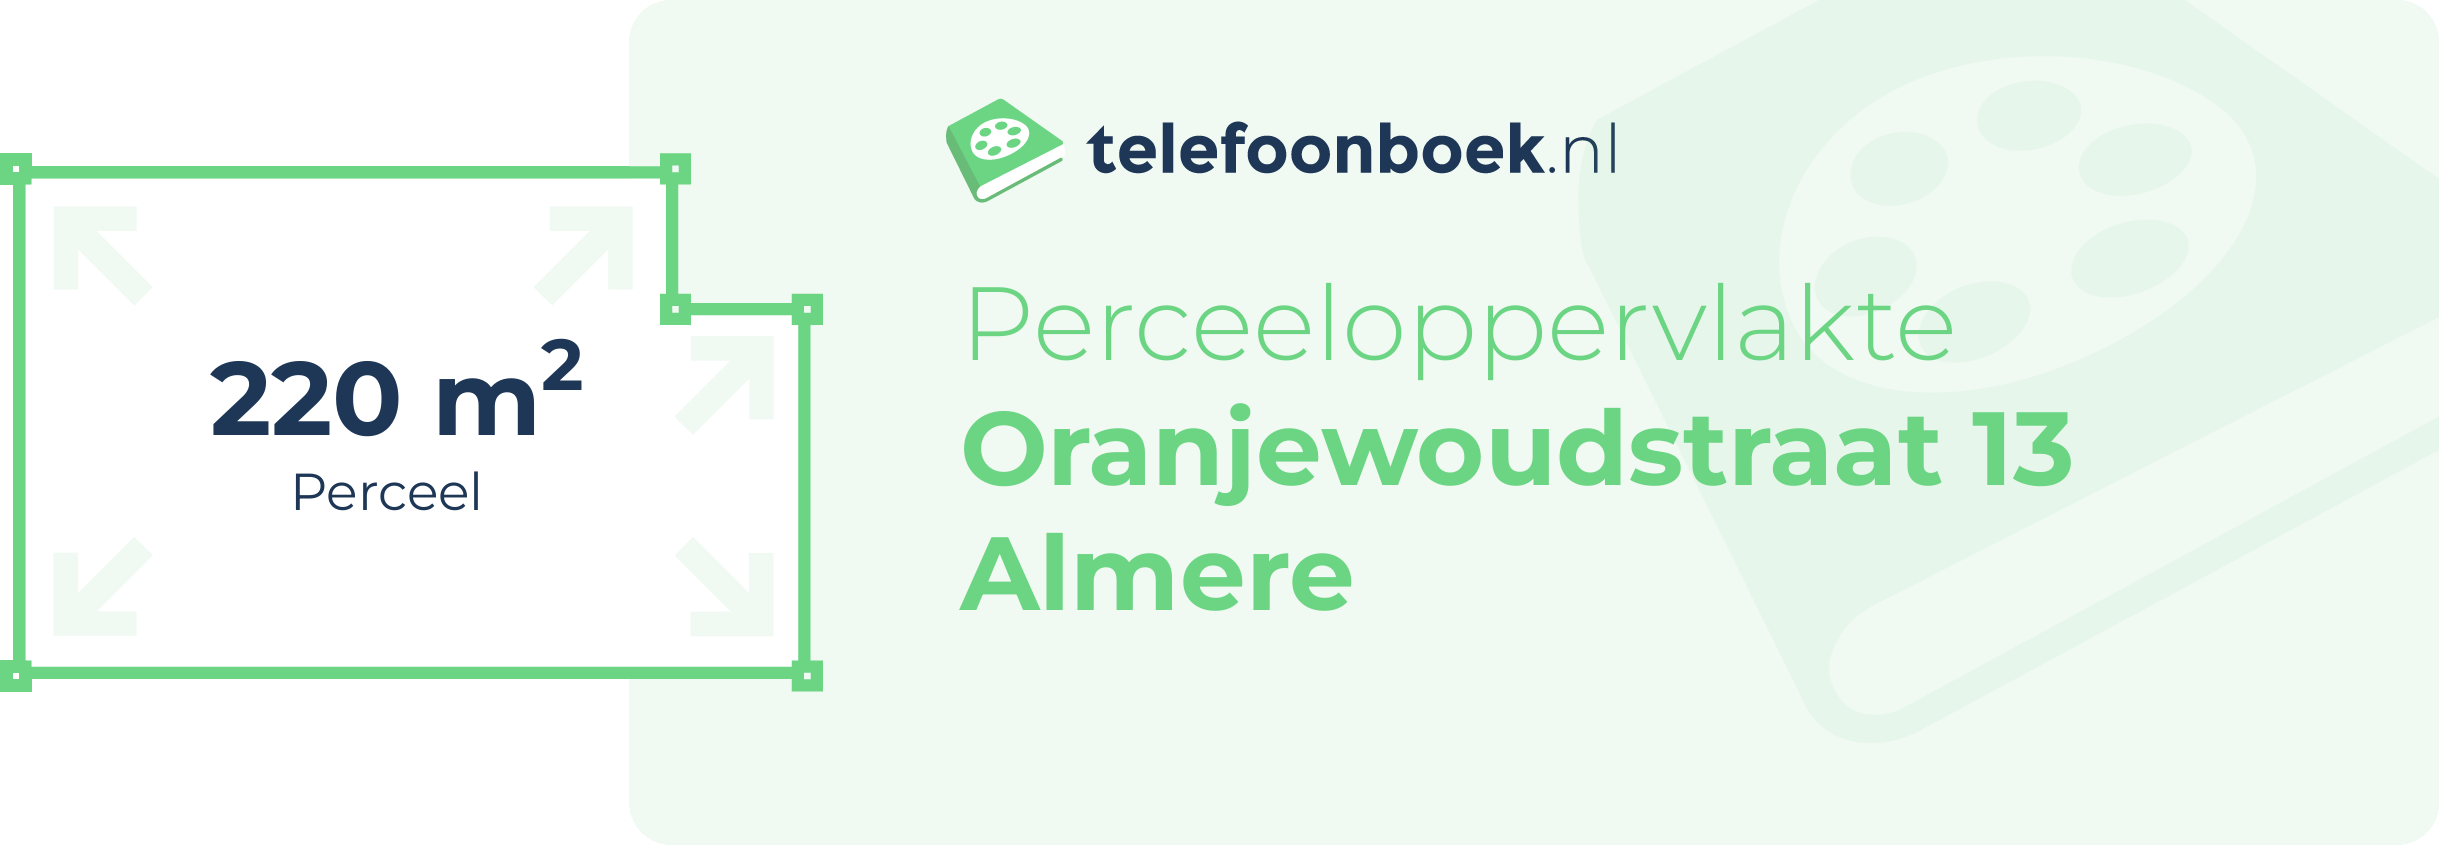 Perceeloppervlakte Oranjewoudstraat 13 Almere